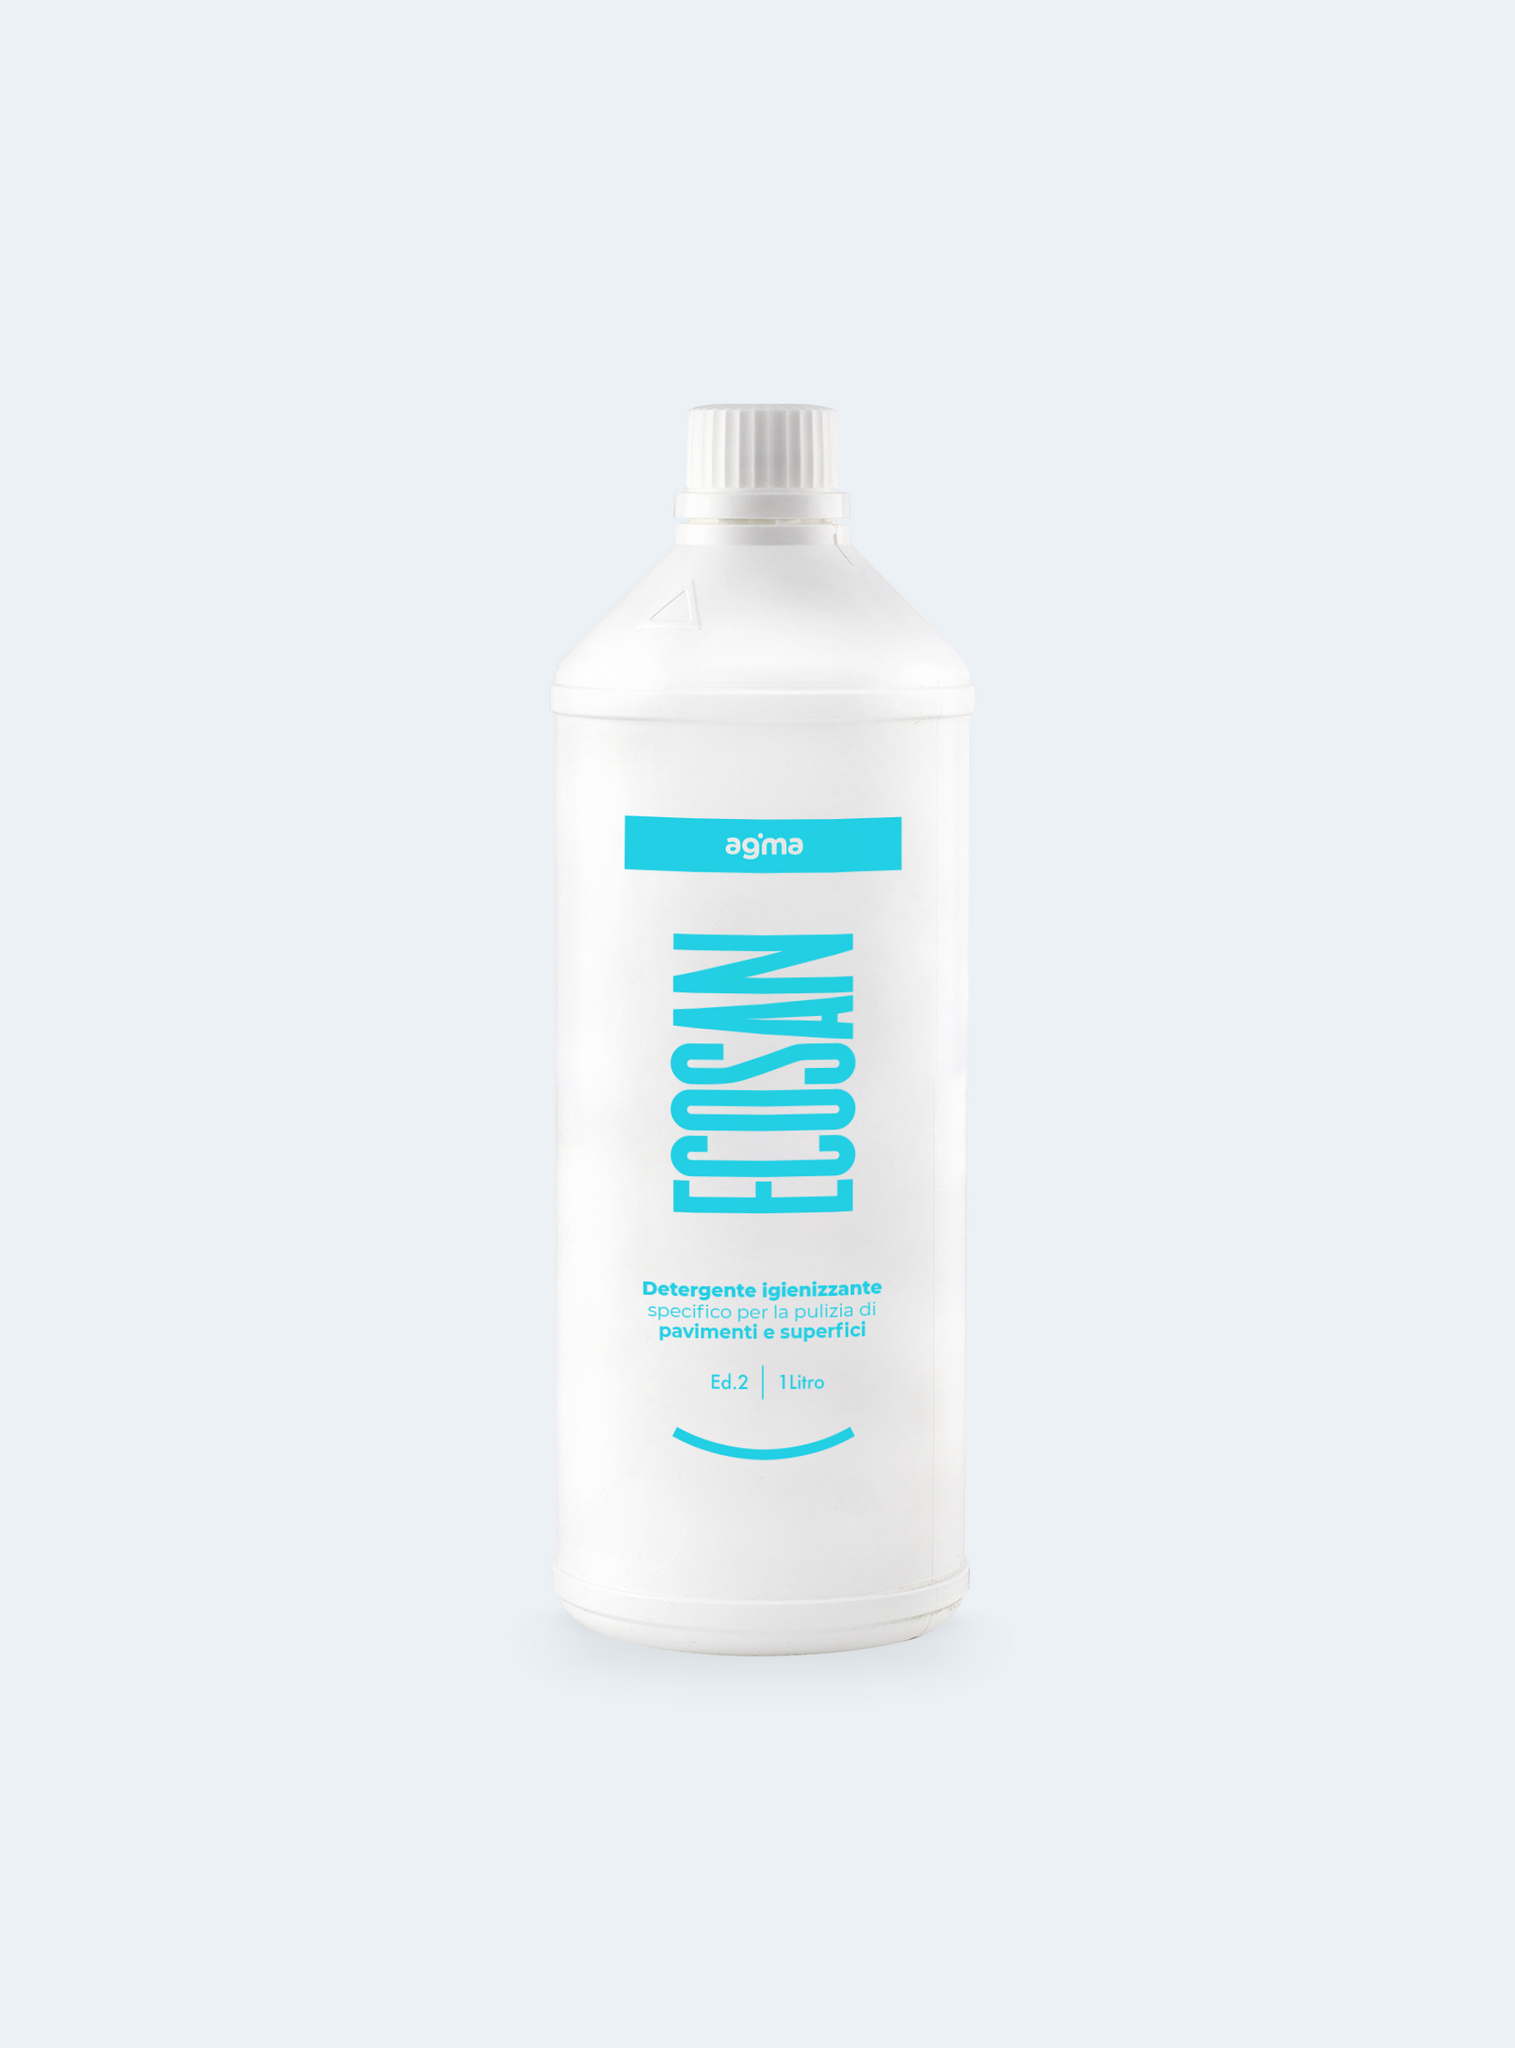 Ecosan - Detergente Igienizzante per pavimenti e superfici 1 litro